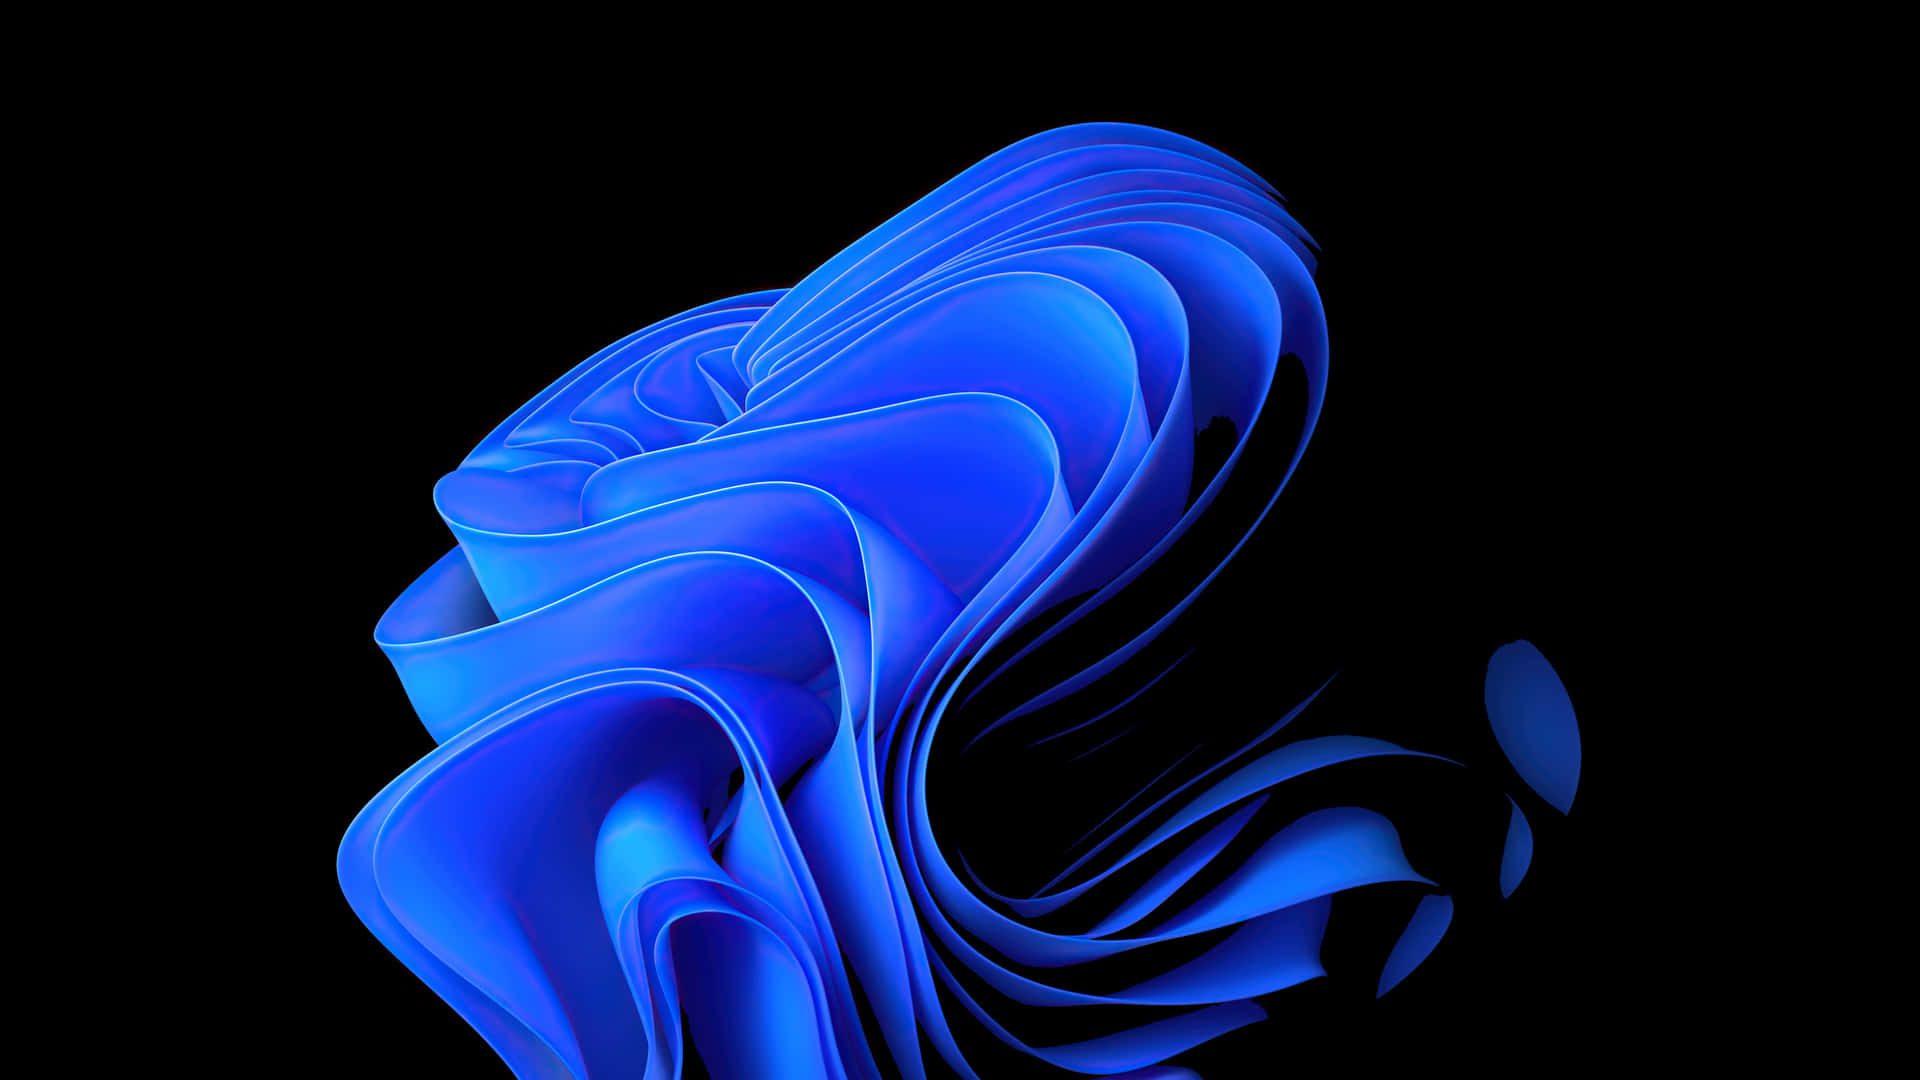 Umdesign Abstrato Impressionante Com Um Belo Fundo Amoled Azul. Papel de Parede